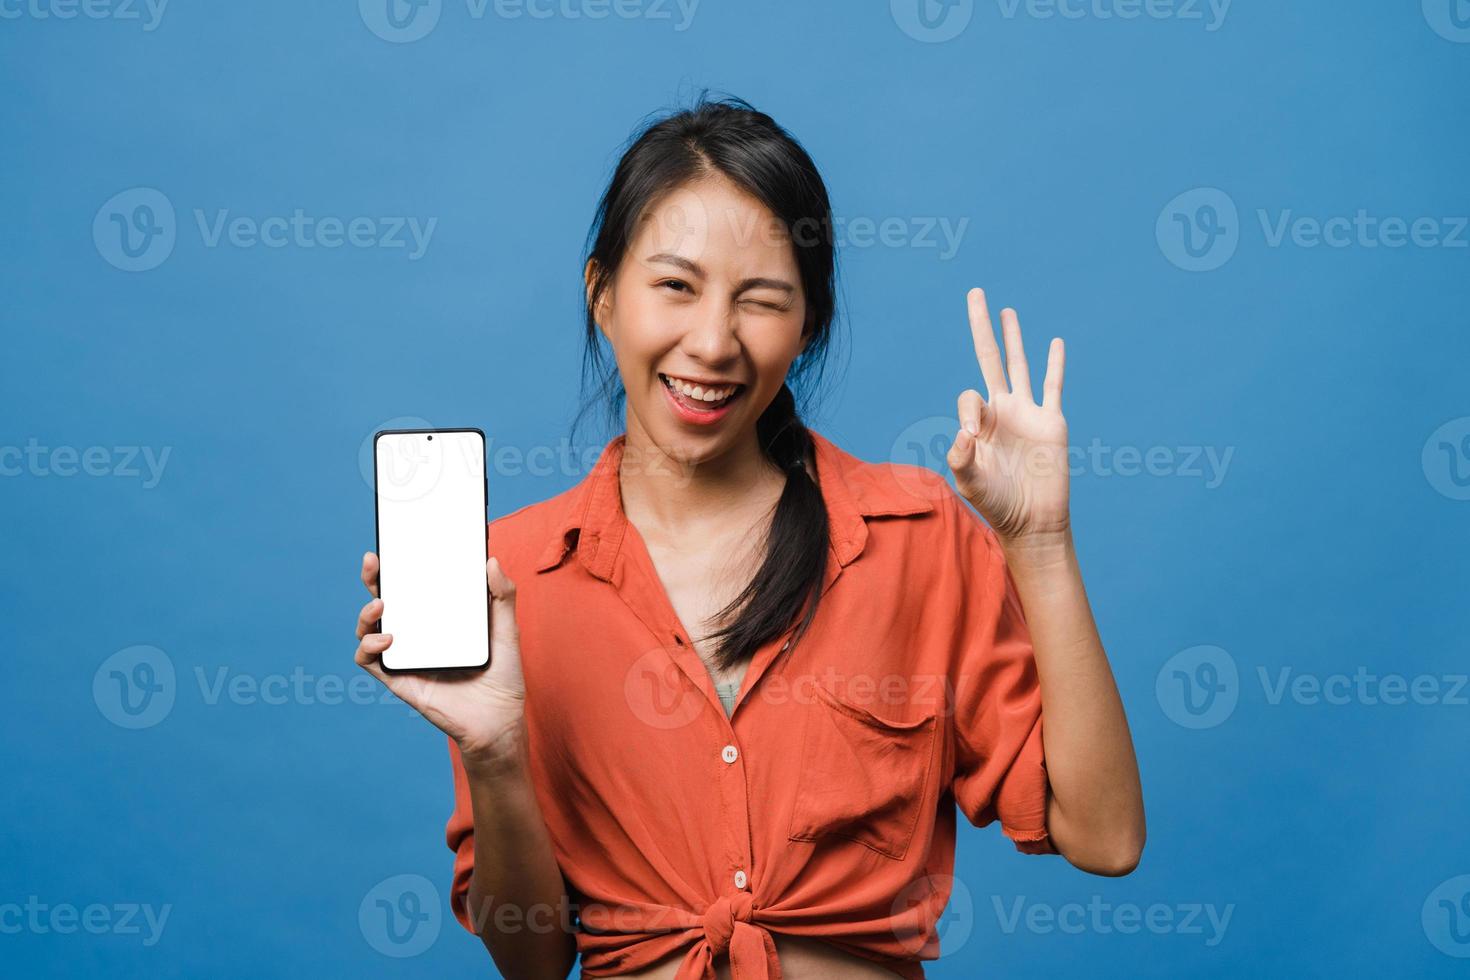 une jeune femme asiatique montre un écran de smartphone vide avec une expression positive, sourit largement, vêtue de vêtements décontractés, se sentant heureuse sur fond bleu. téléphone portable avec écran blanc en main féminine. photo